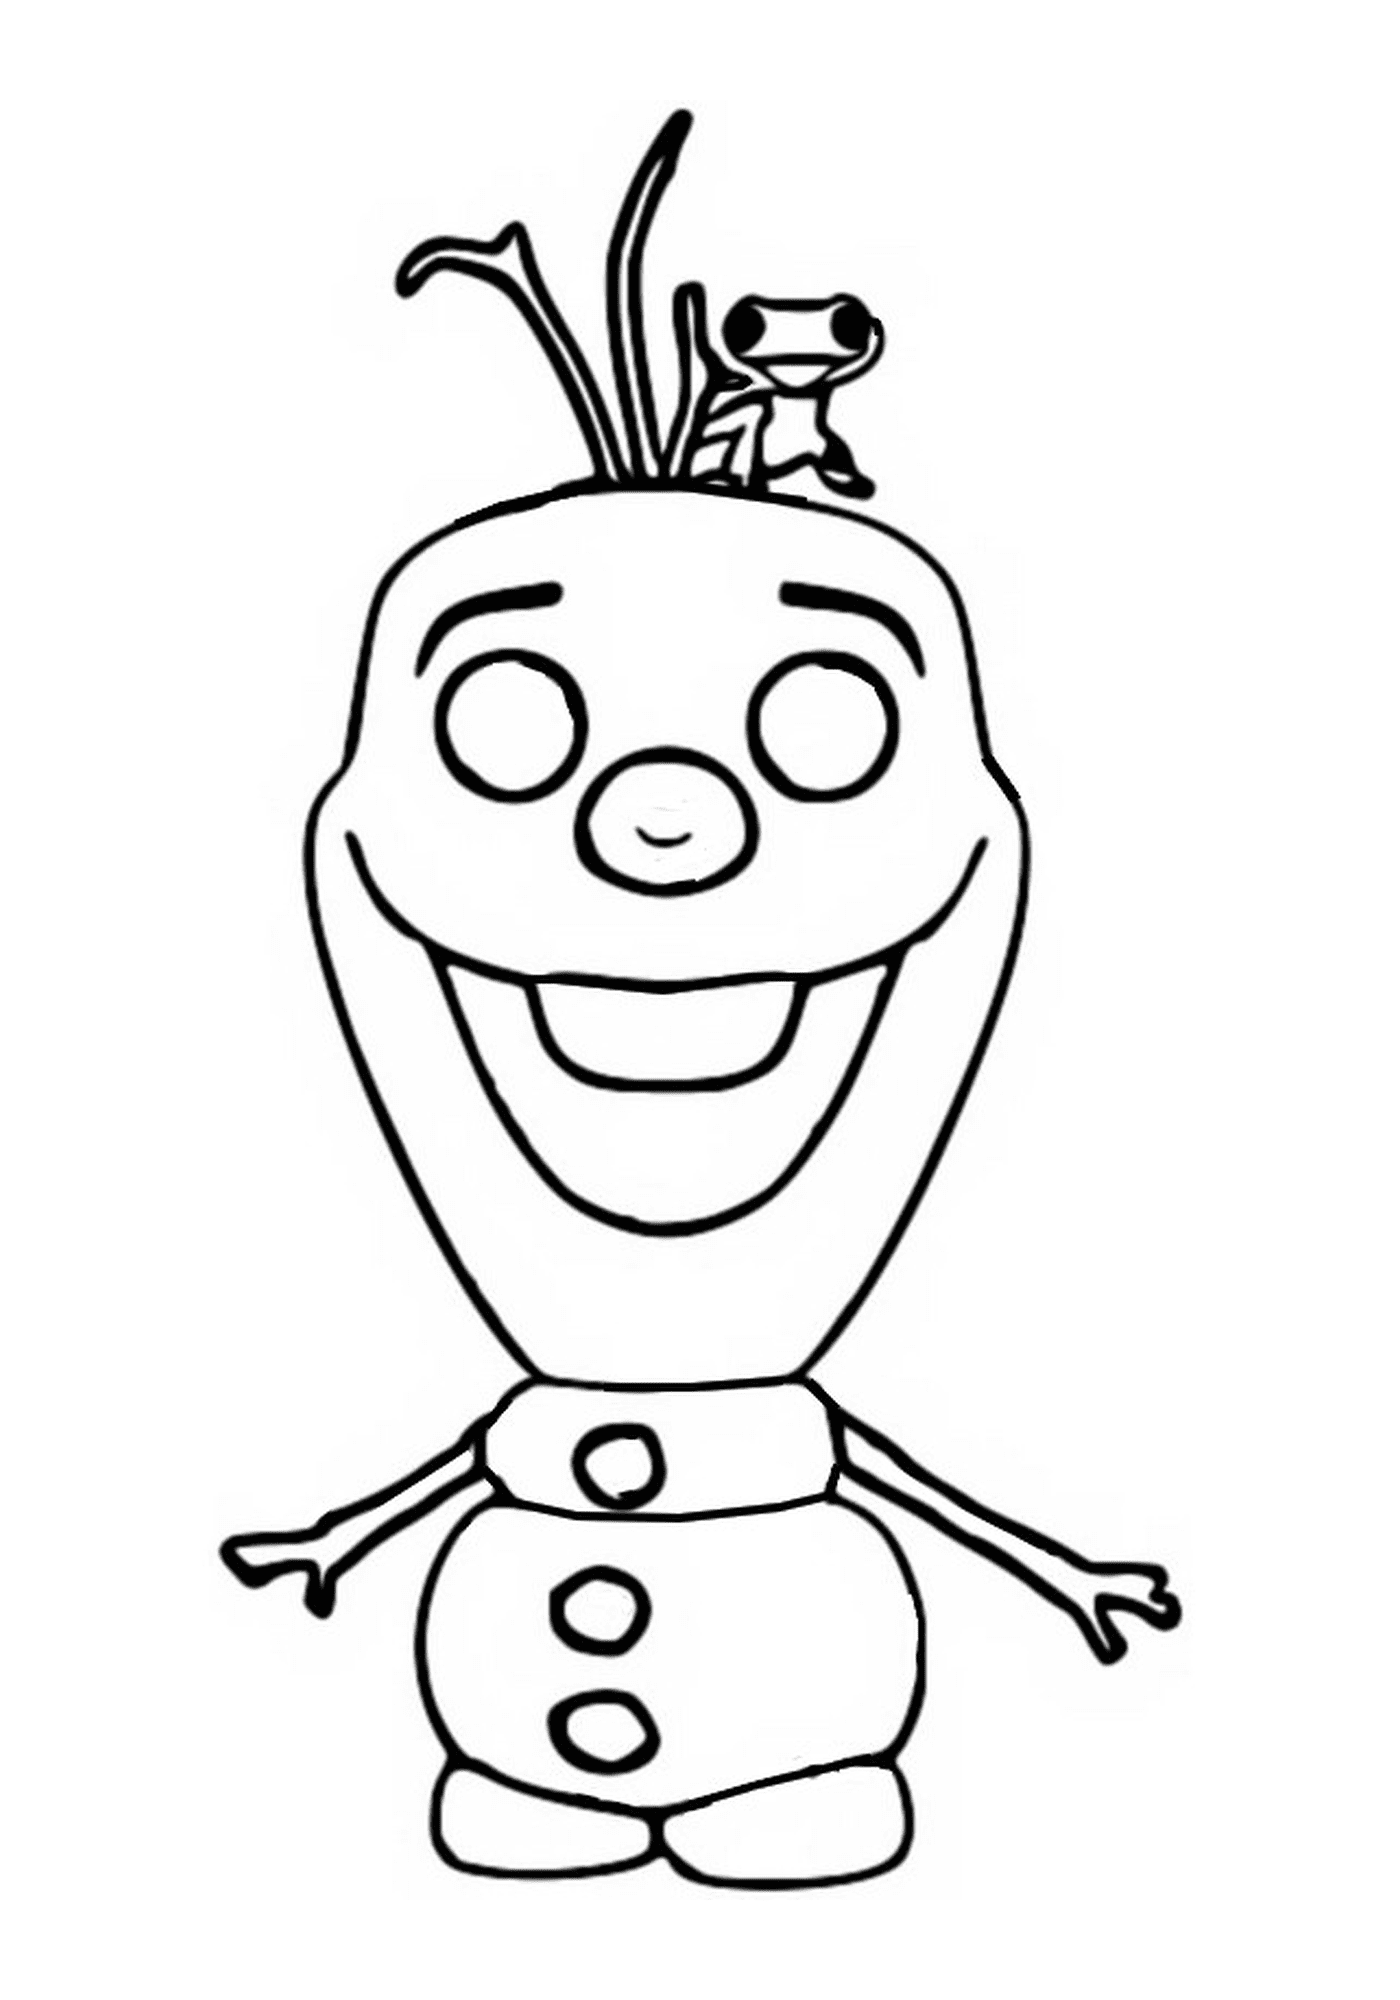  Olaf, Frozen 2, personagem de desenho animado sorrindo 